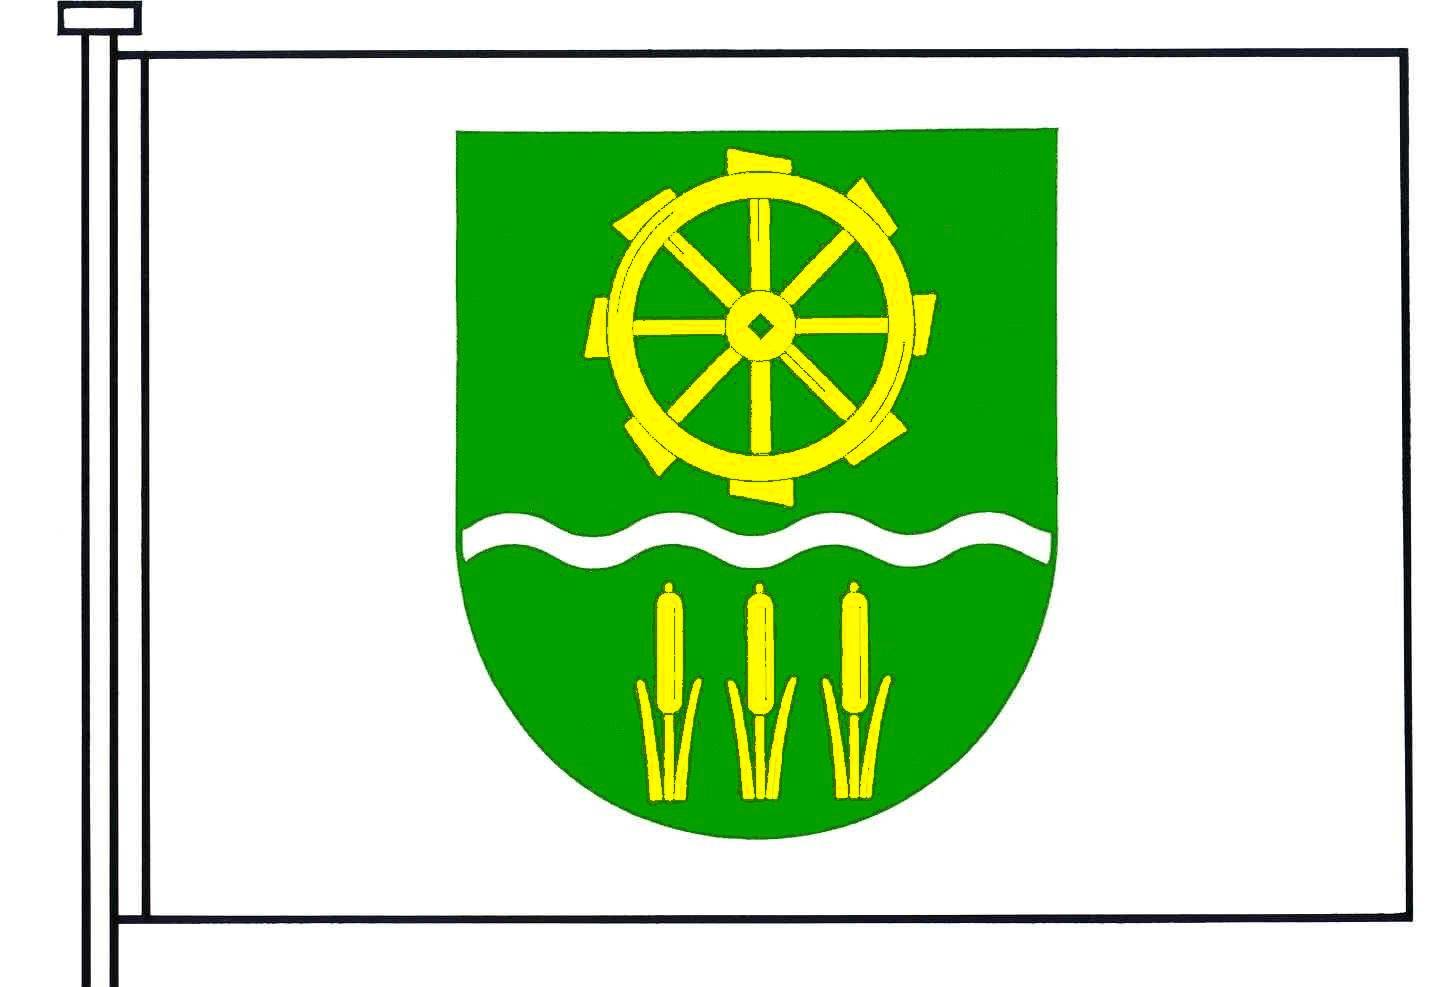 Flagge Gemeinde Alt Duvenstedt, Kreis Rendsburg-Eckernförde